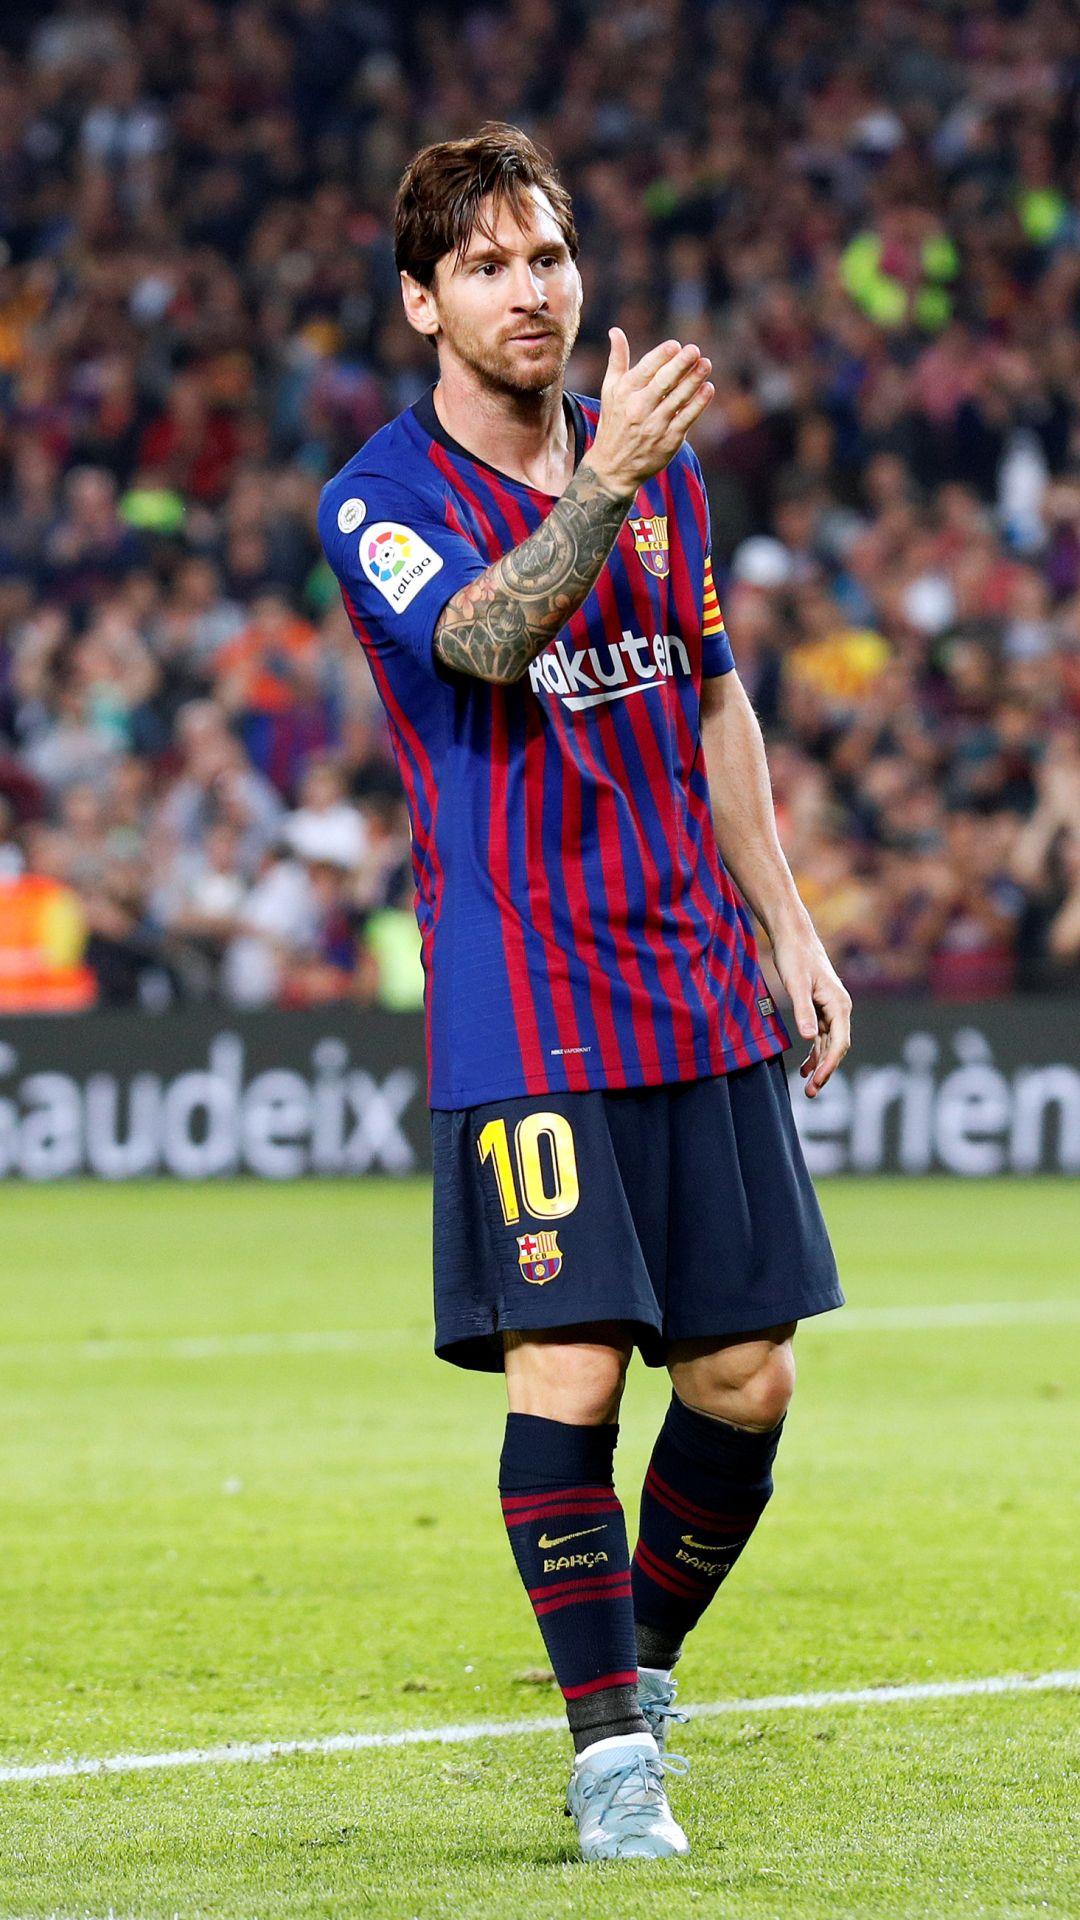 Sports / Lionel Messi (1080x1920) Mobile Wallpaper. Lionel messi